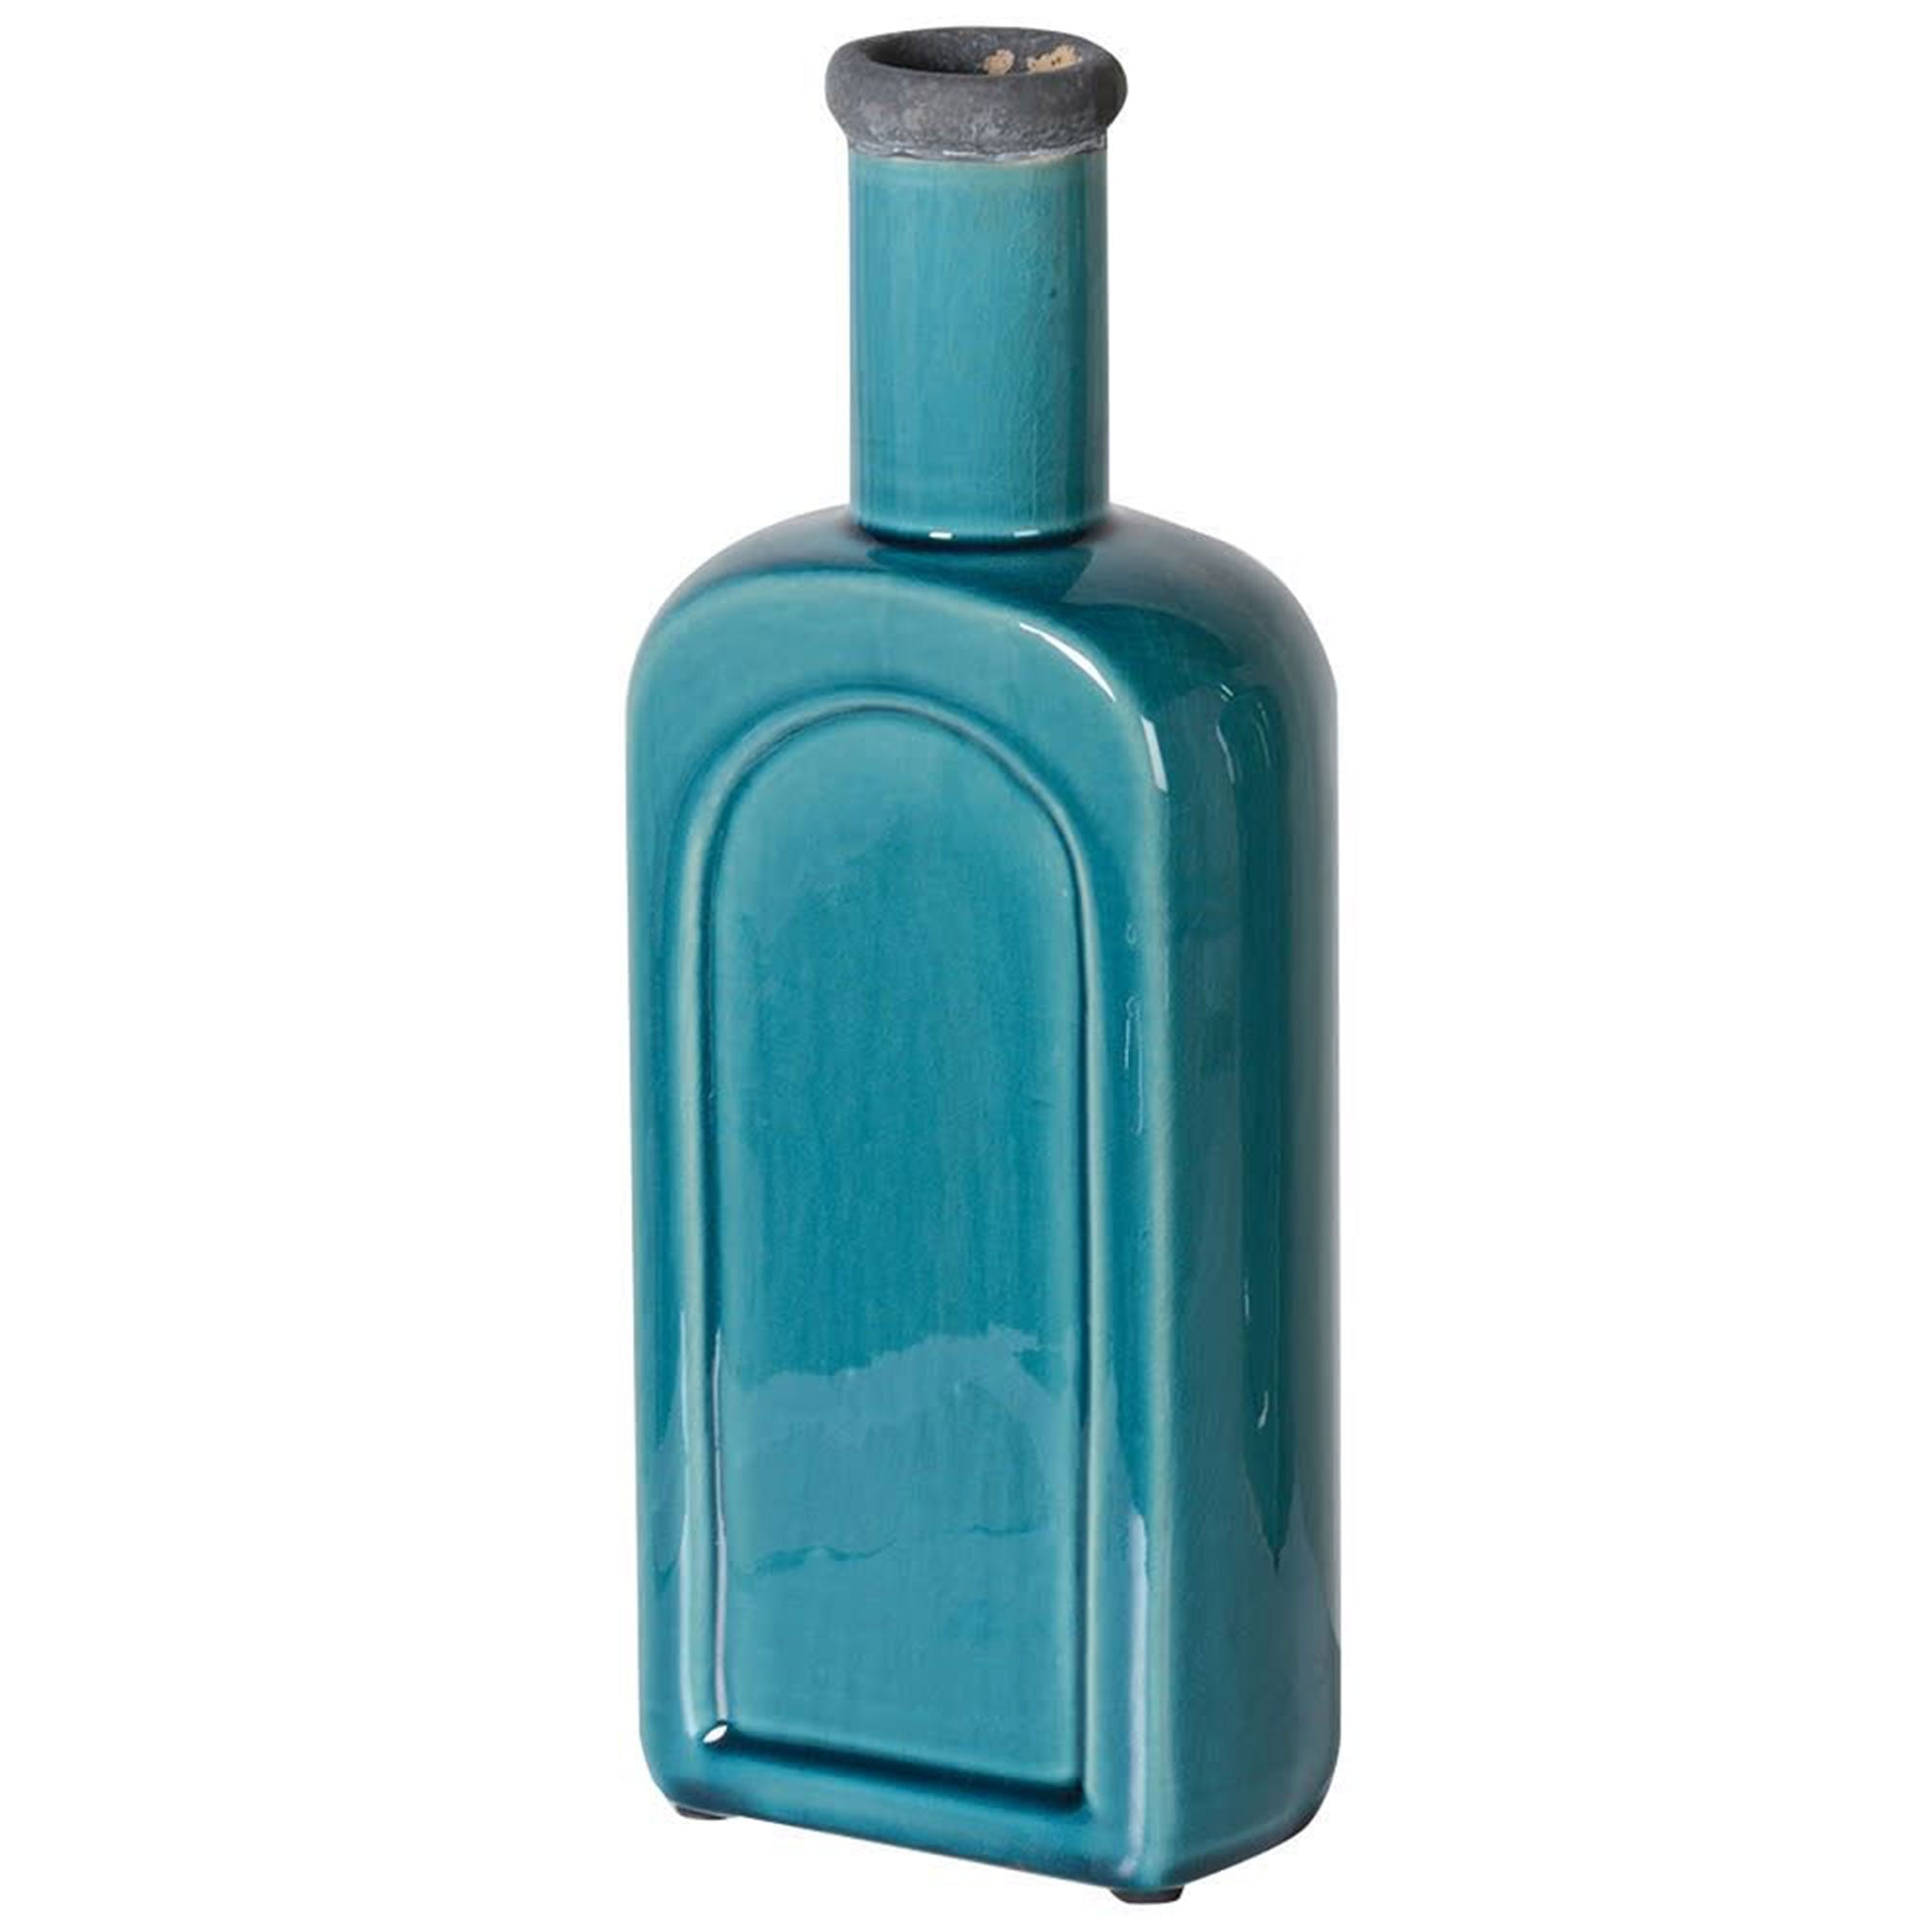 Bottle Vase Turquoise Small